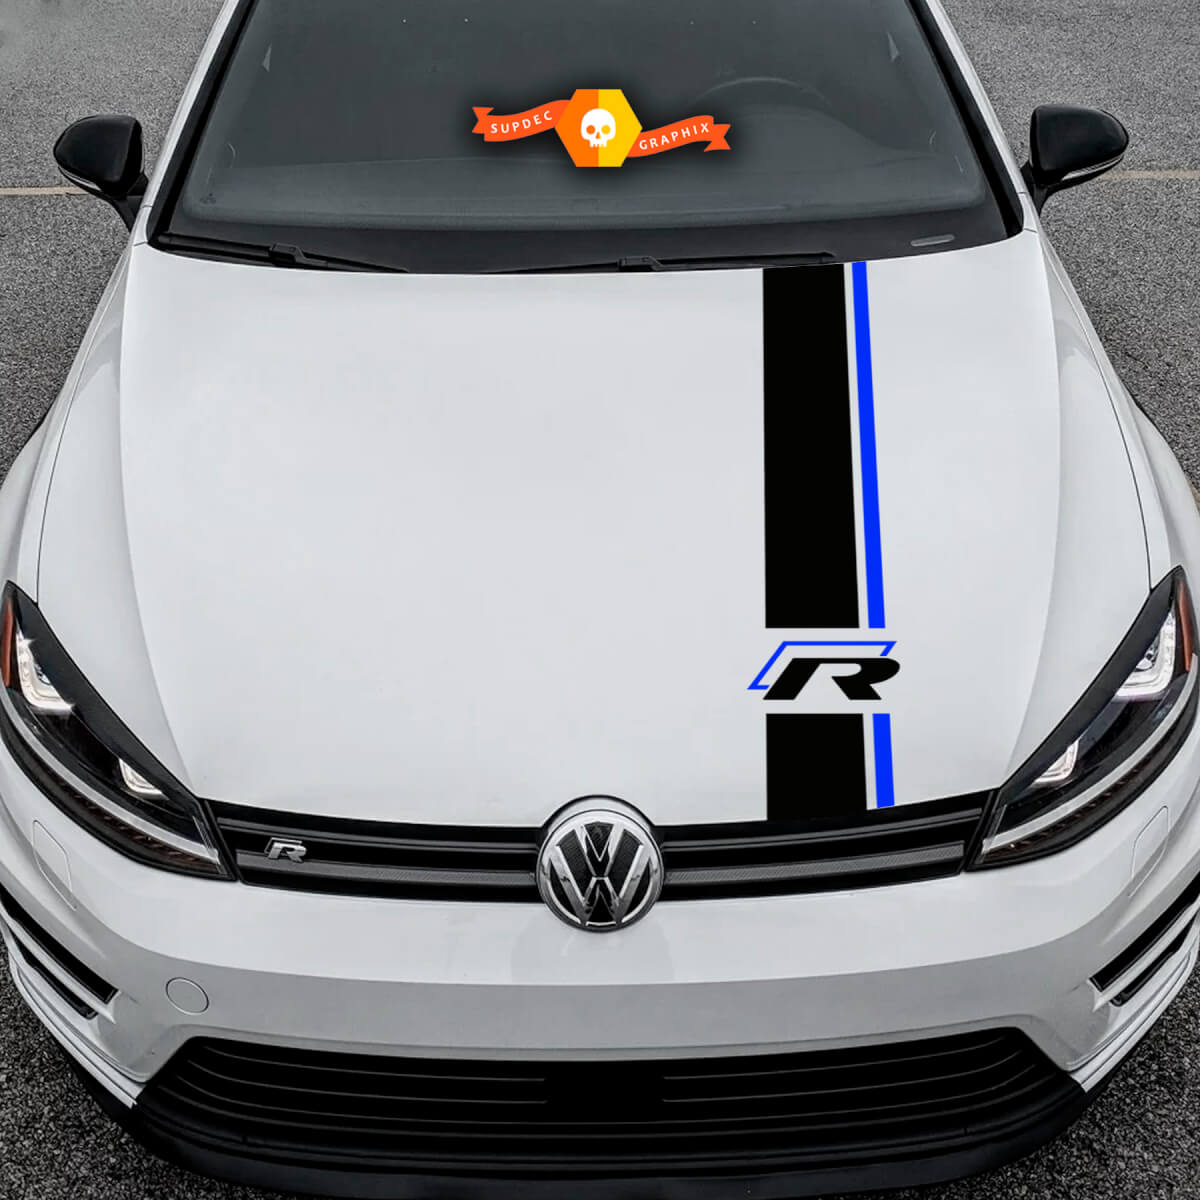 VW Volkswagen pare-brise lettrage autocollant autocollant jetta gti vw  buggy beetle